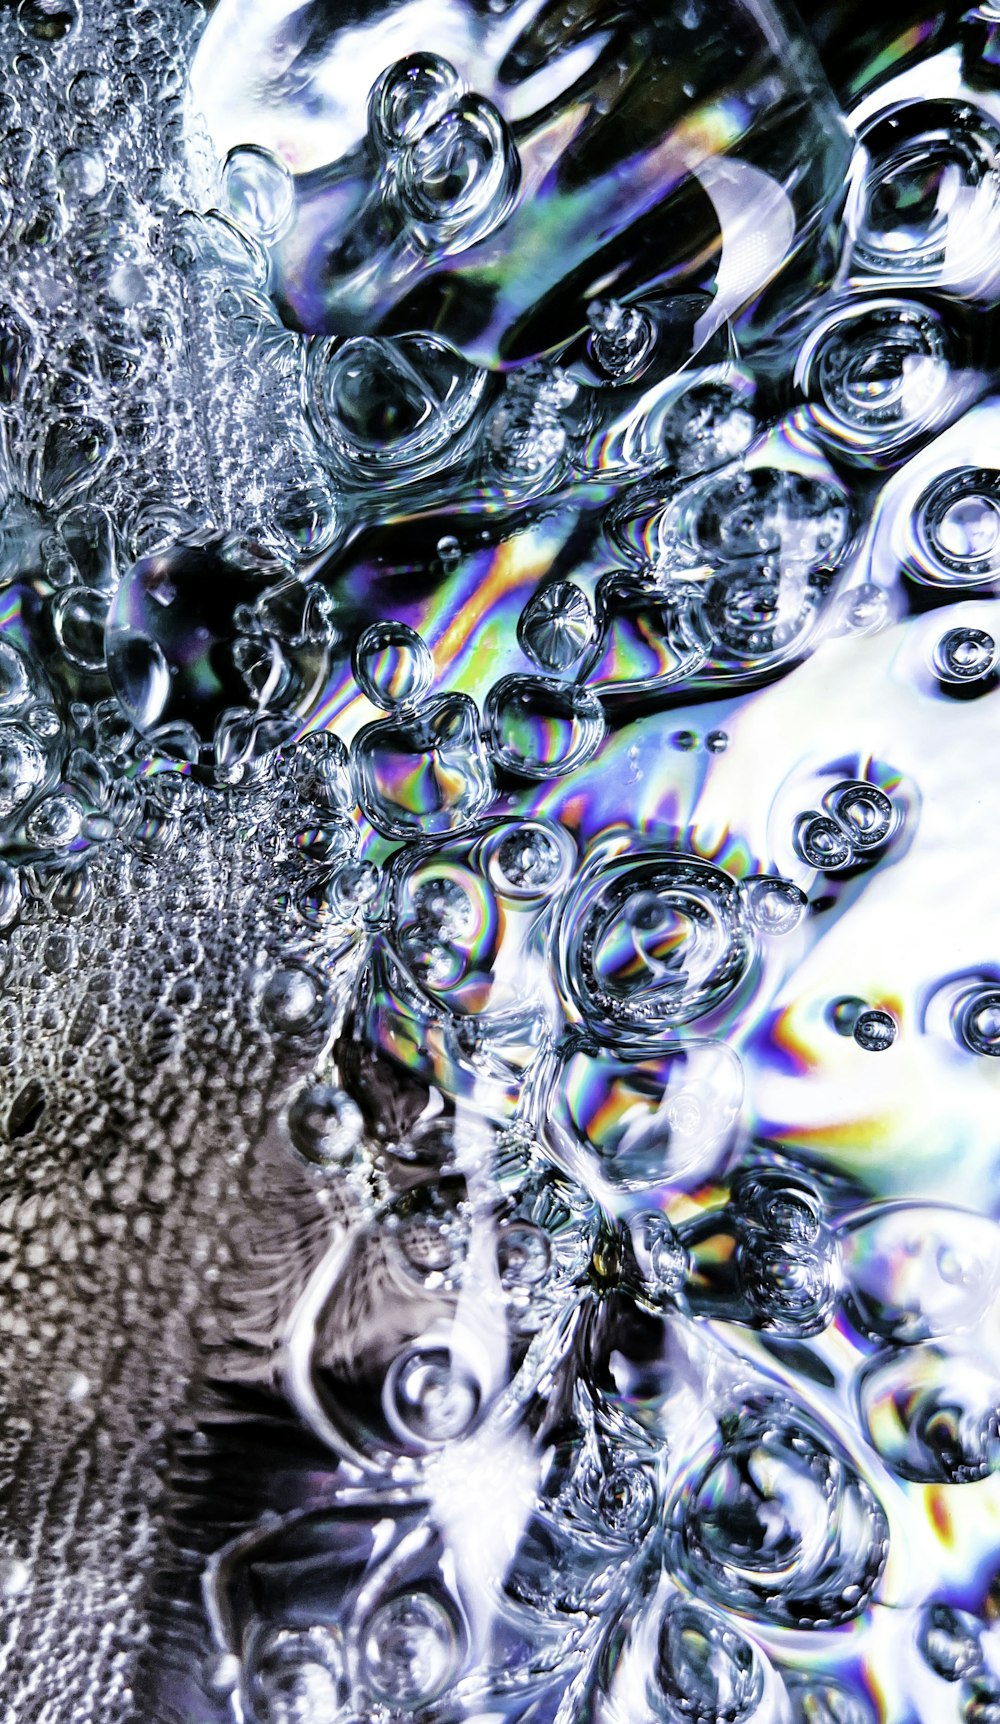 gotículas de água na superfície do vidro